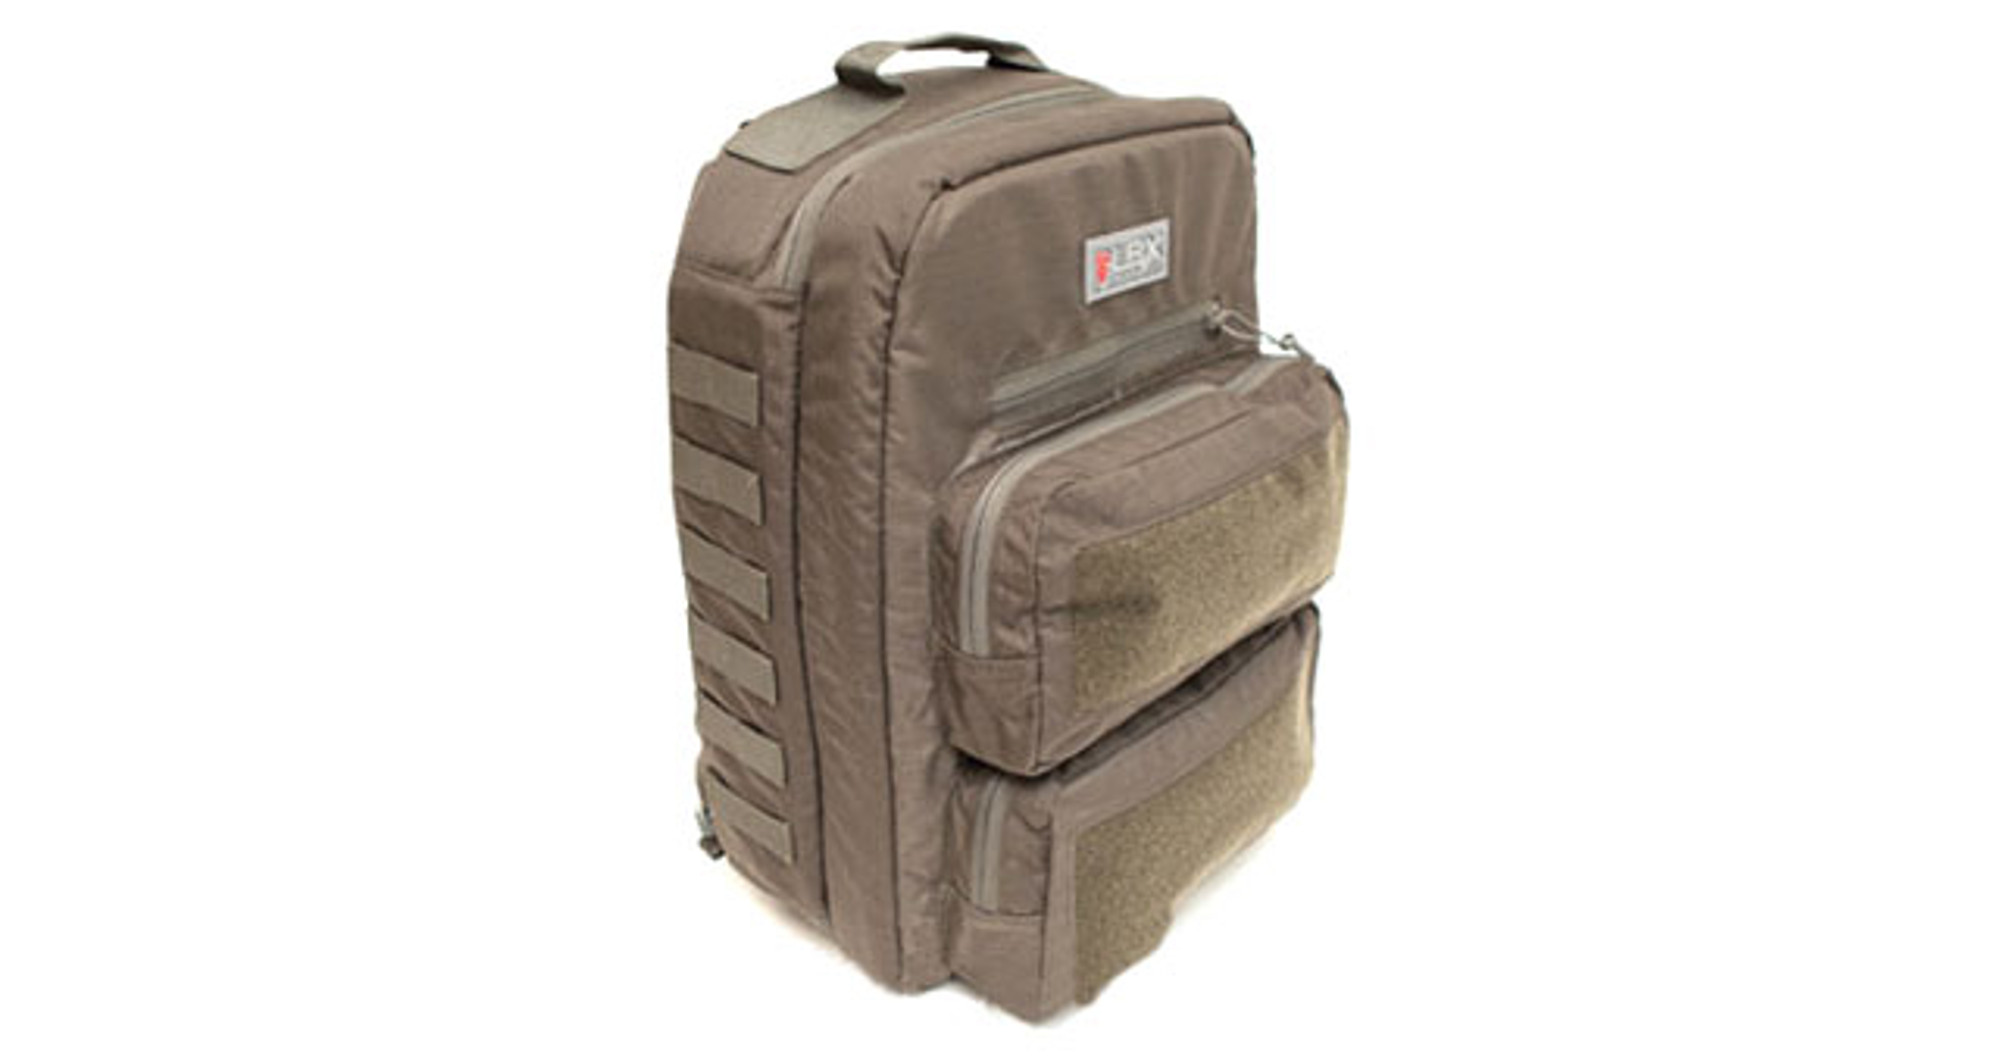 LBX Transporter Backpack - MAS Grey